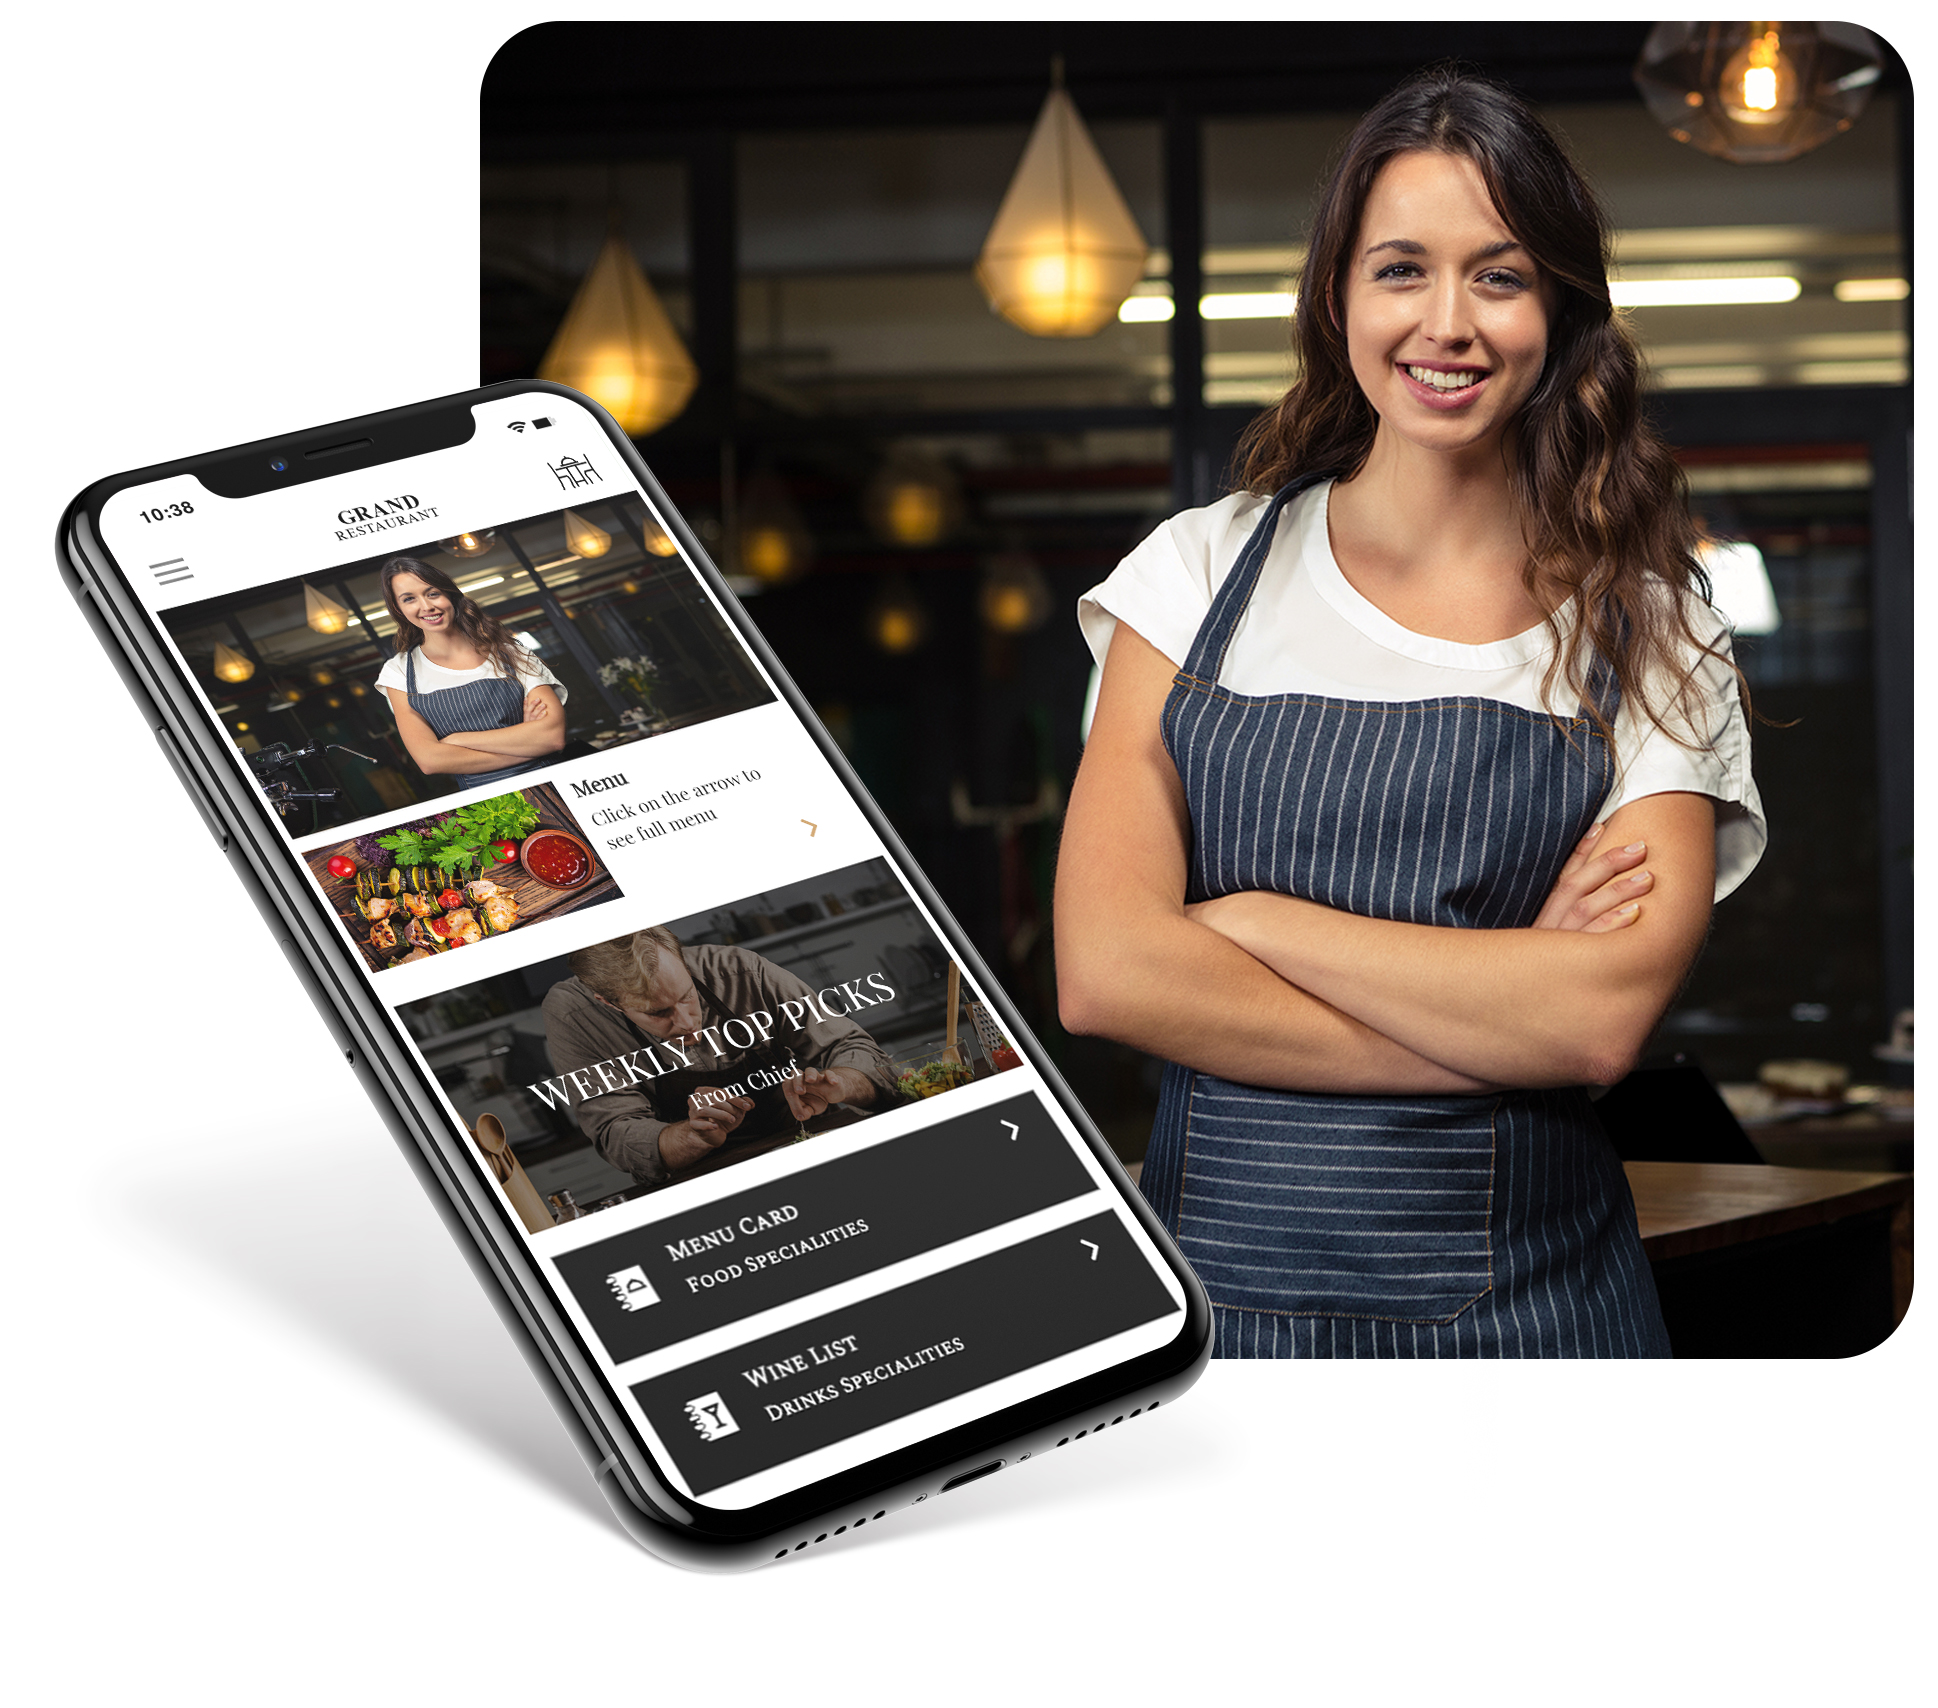 Applicazioni per ristoranti -  Migliorare la fedeltà dei clienti